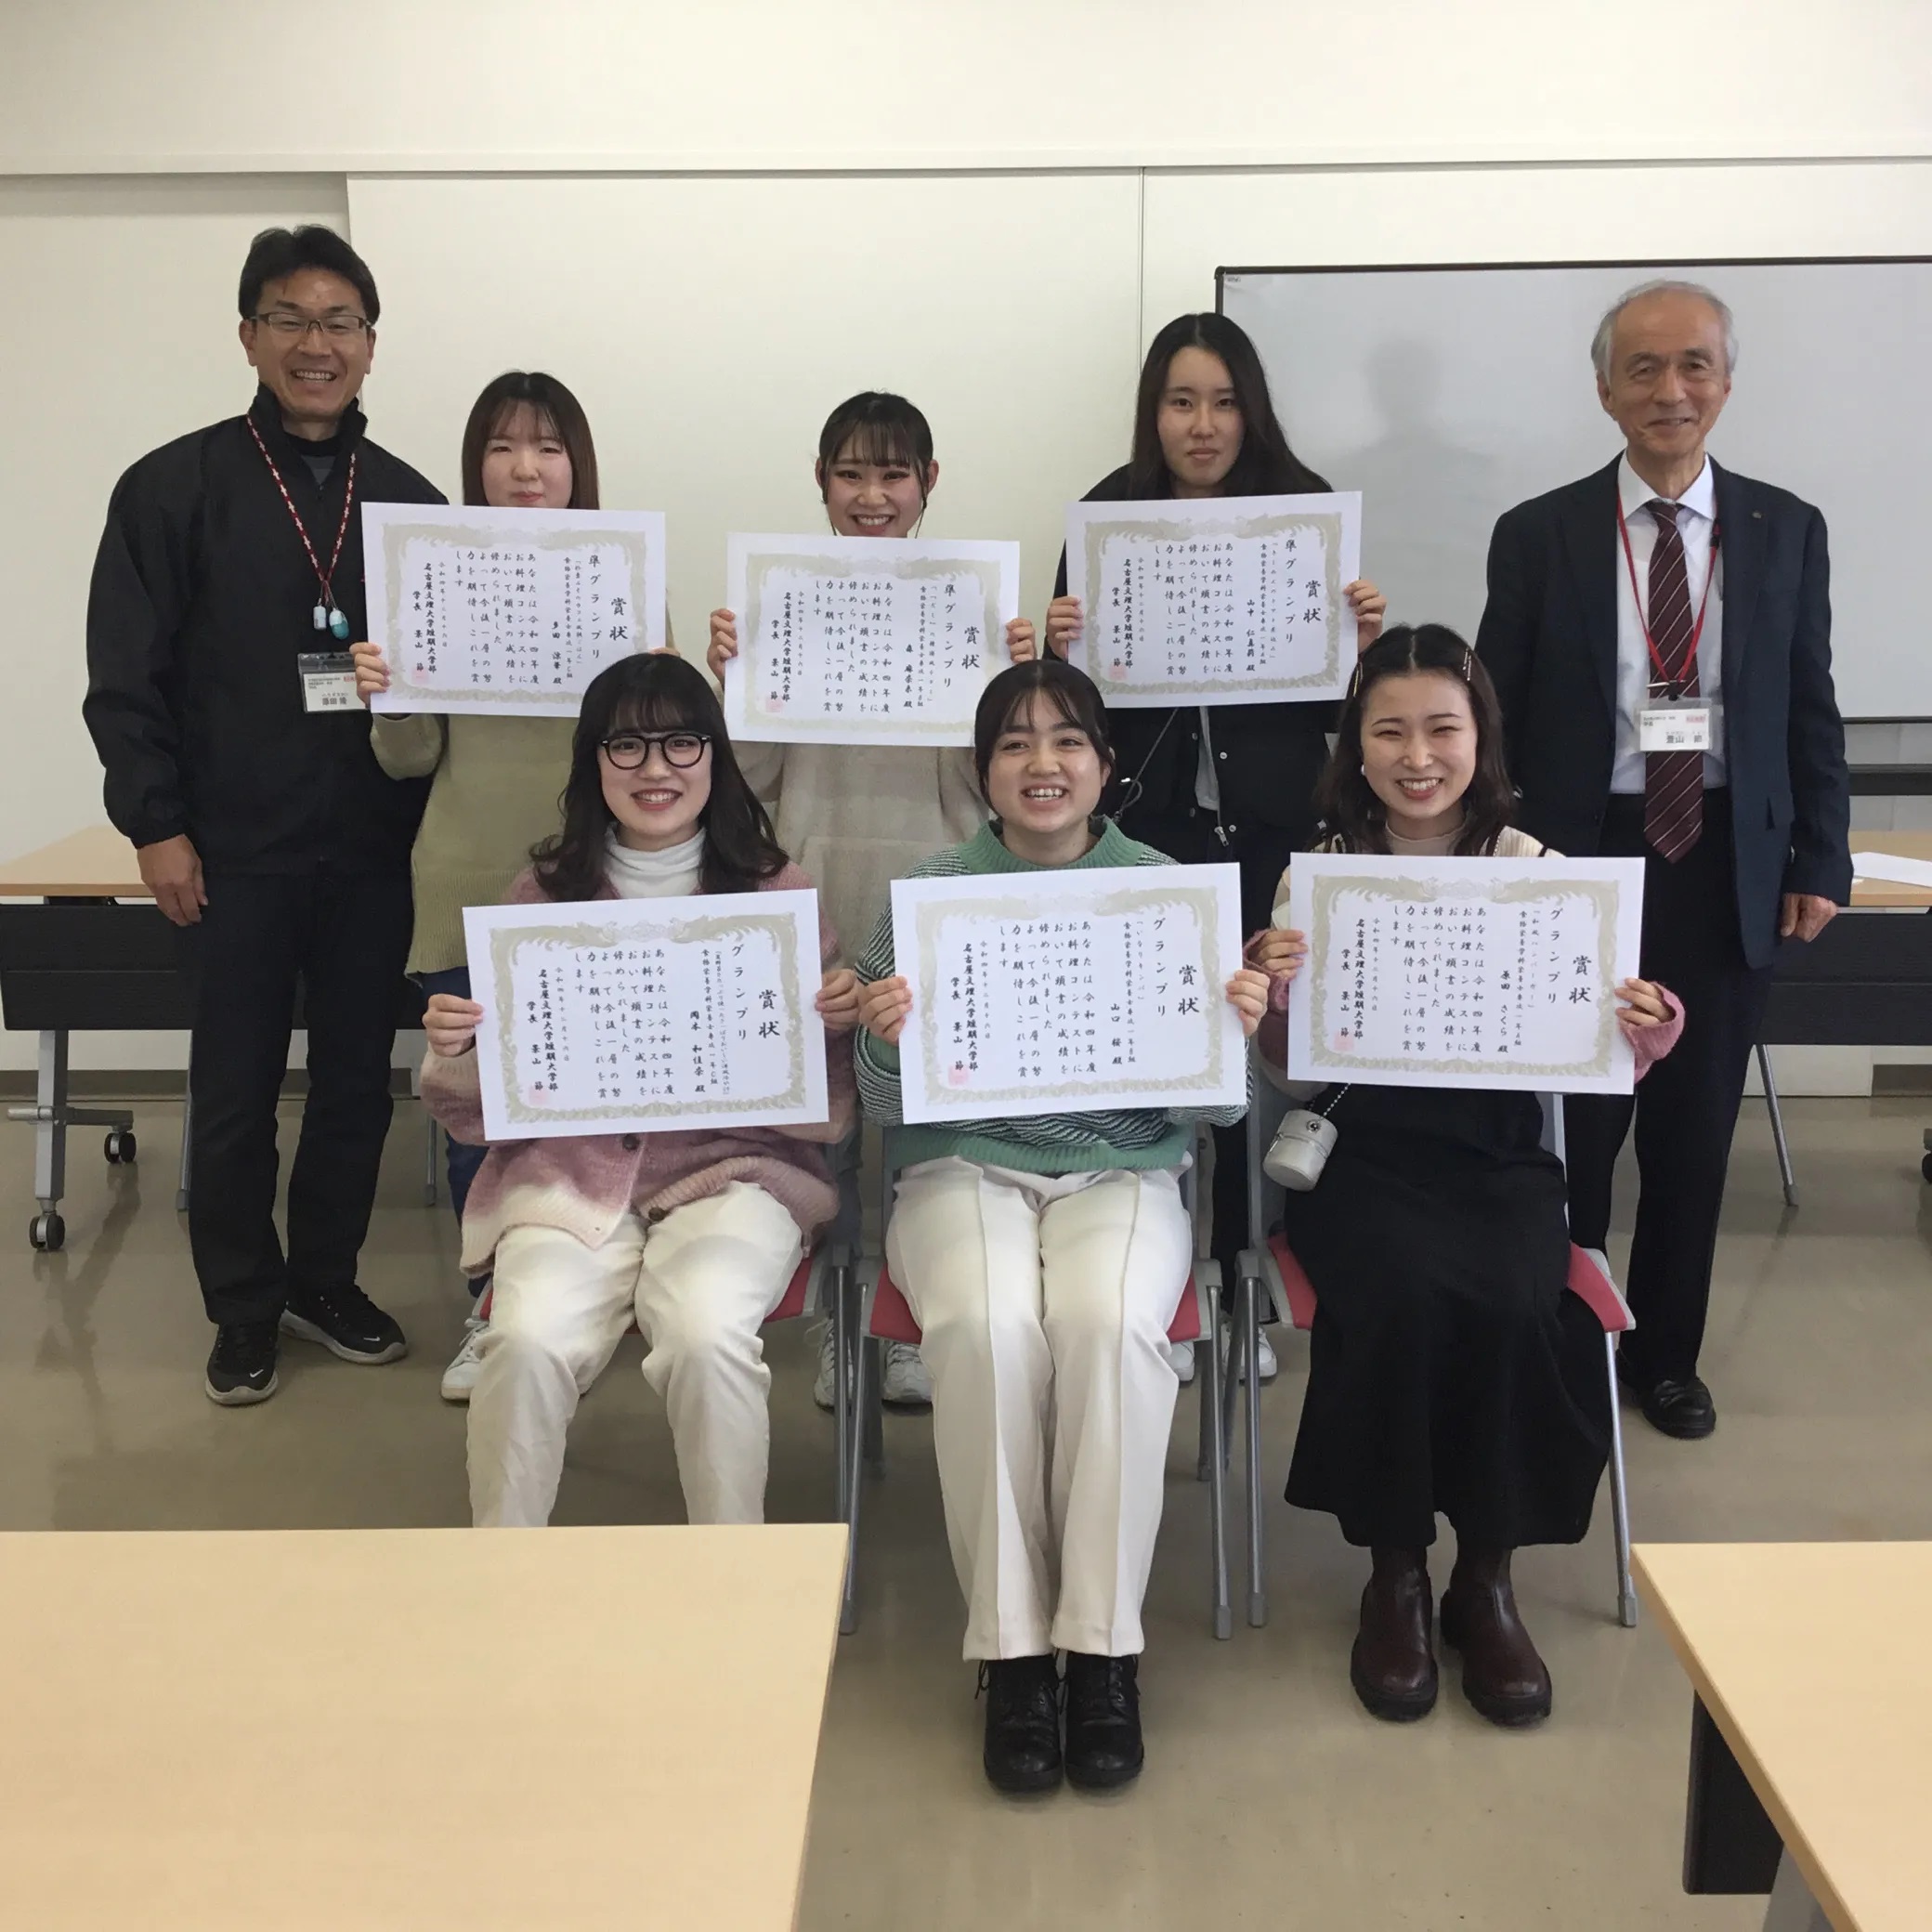 第16回「名古屋文理お料理コンテスト」表彰式が行われました。